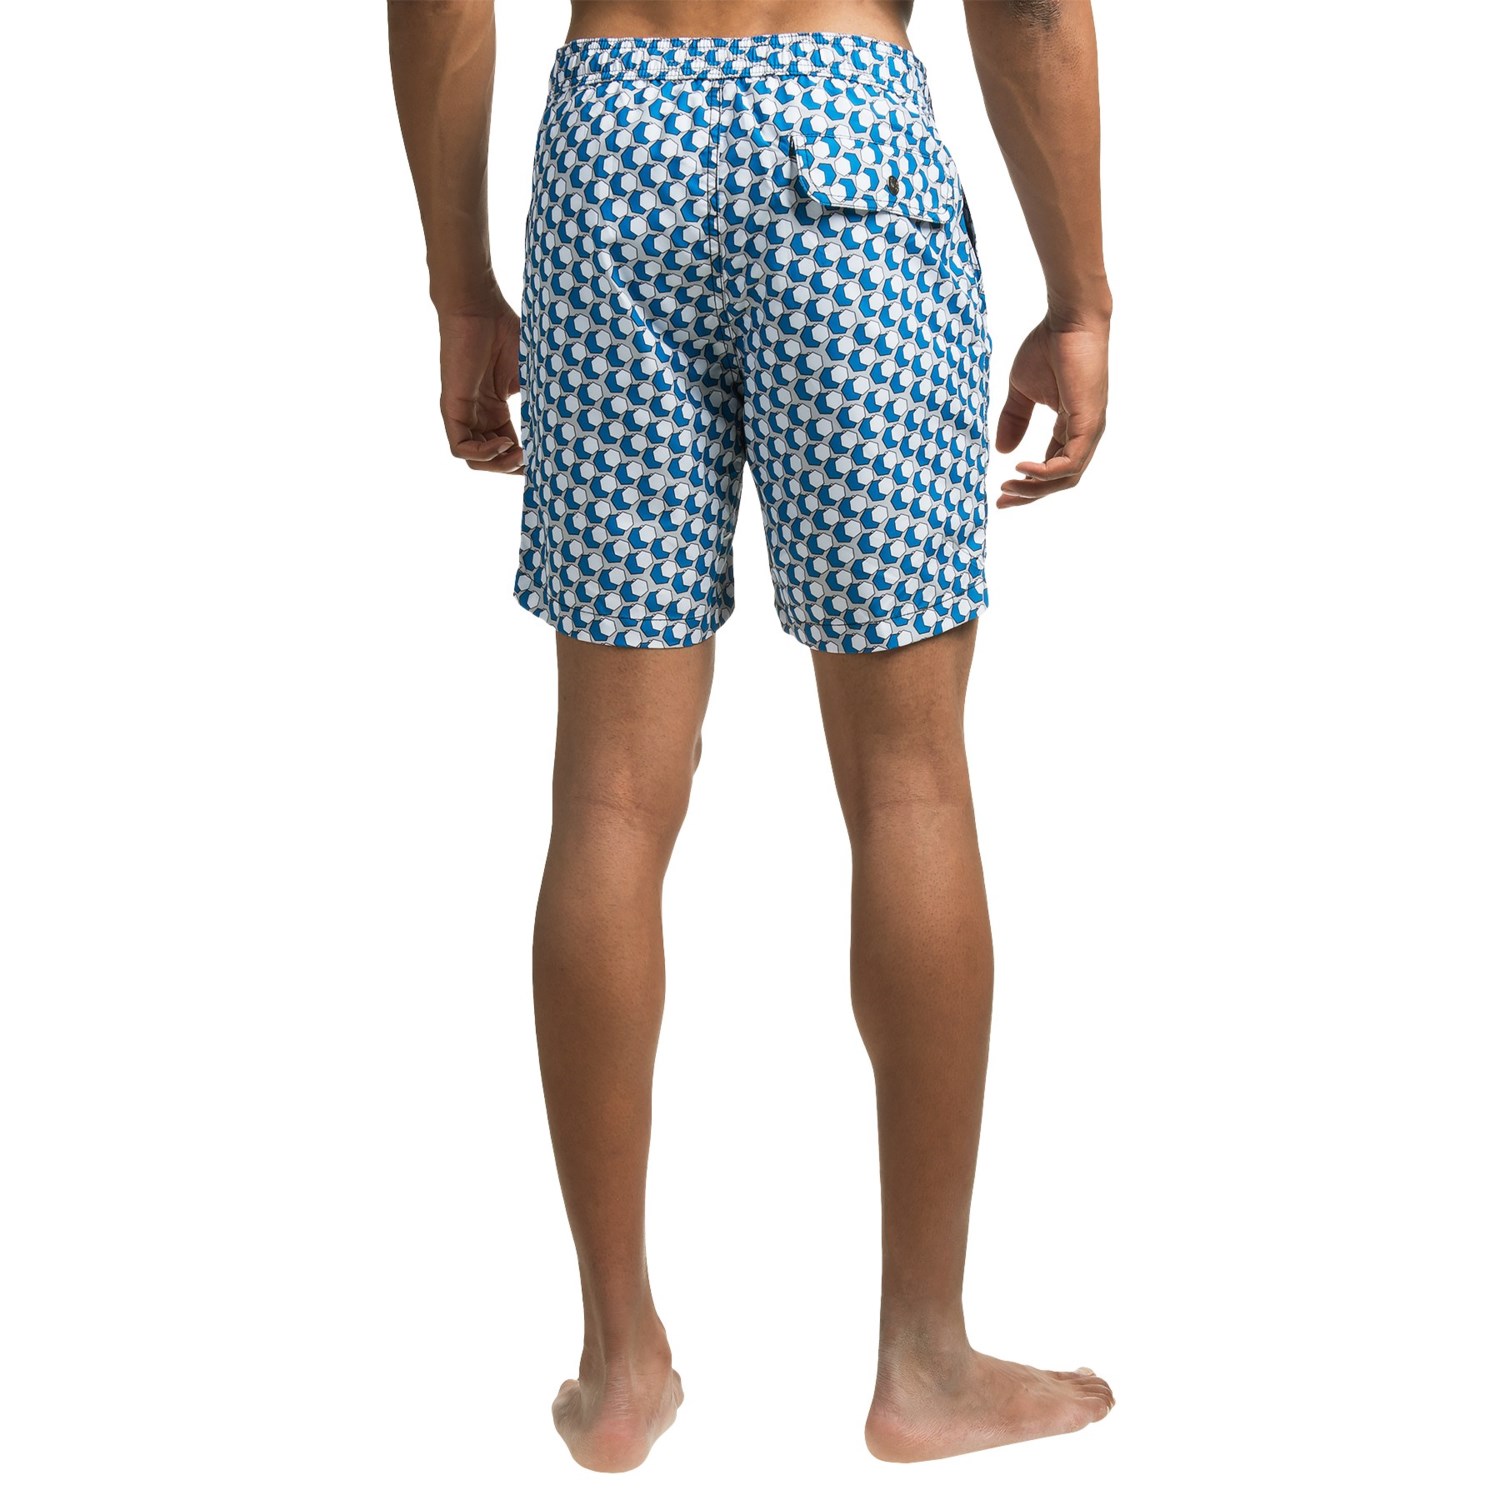 Mr. Swim Kurt Hybrid Swim Shorts (For Men) - Save 50%